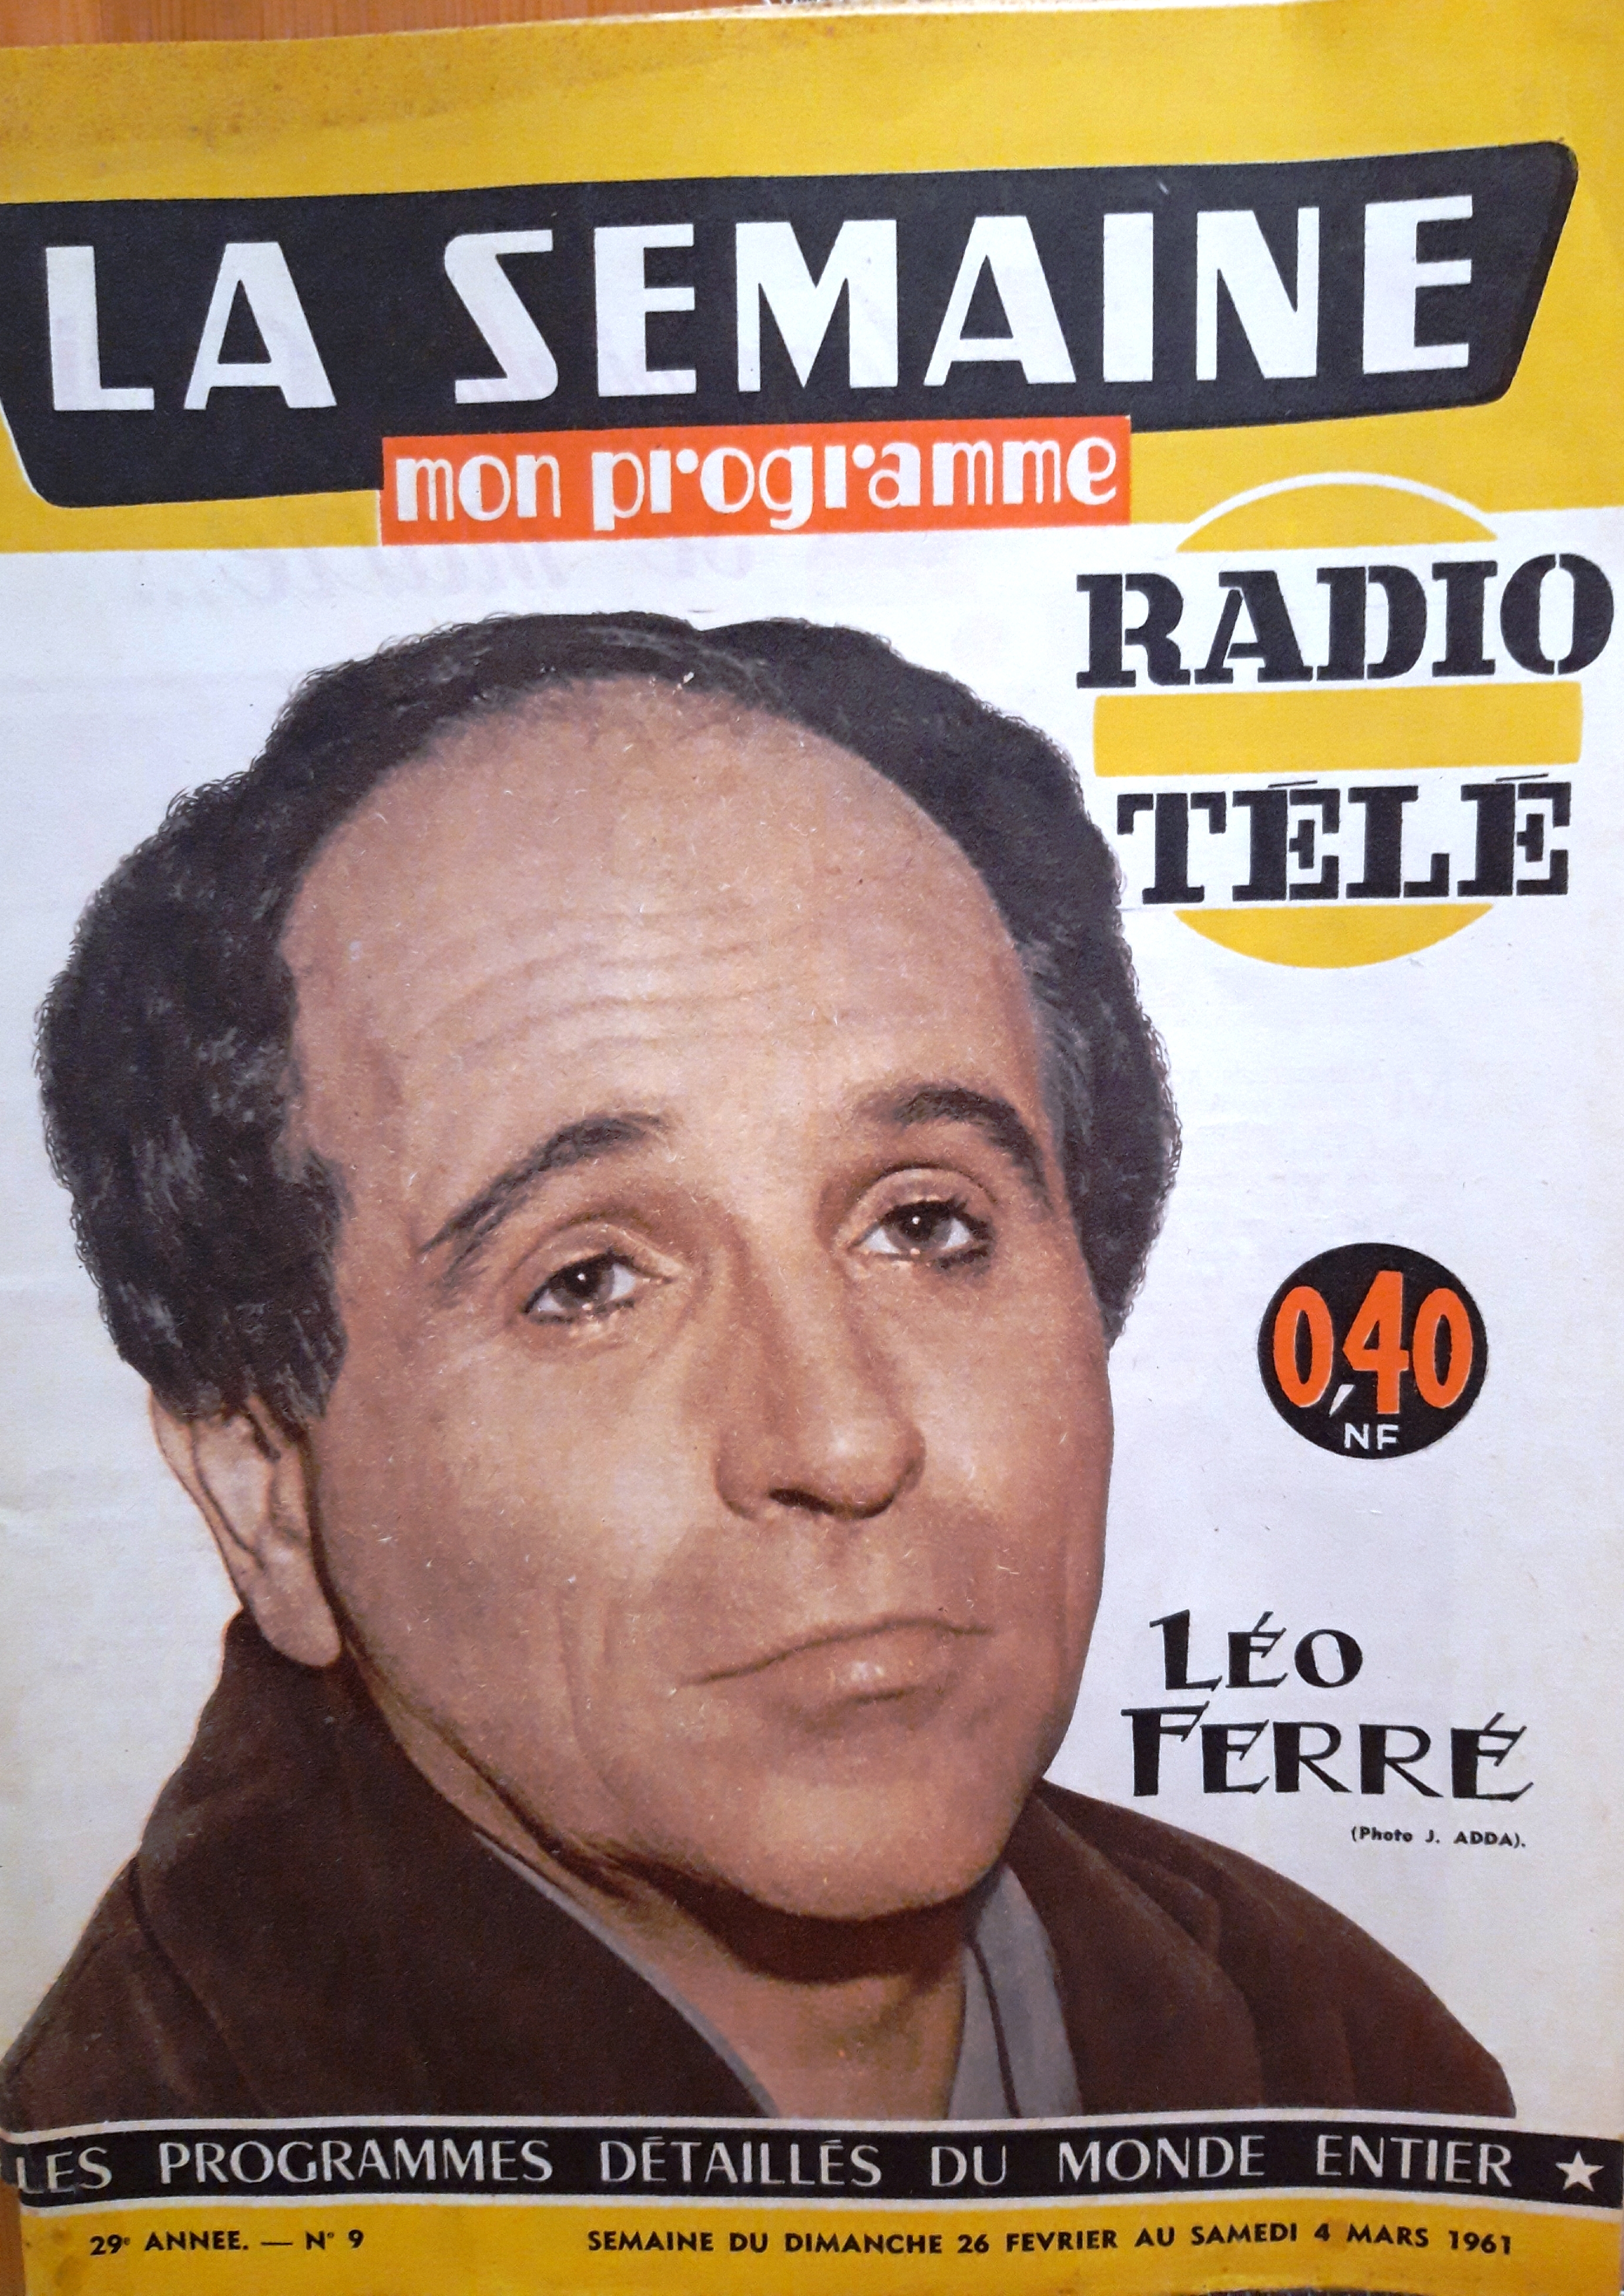 Léo Ferré - La semaine Mon programme n°9 - Radio Télé du dimanche 26 février au samedi 4 mars 1961